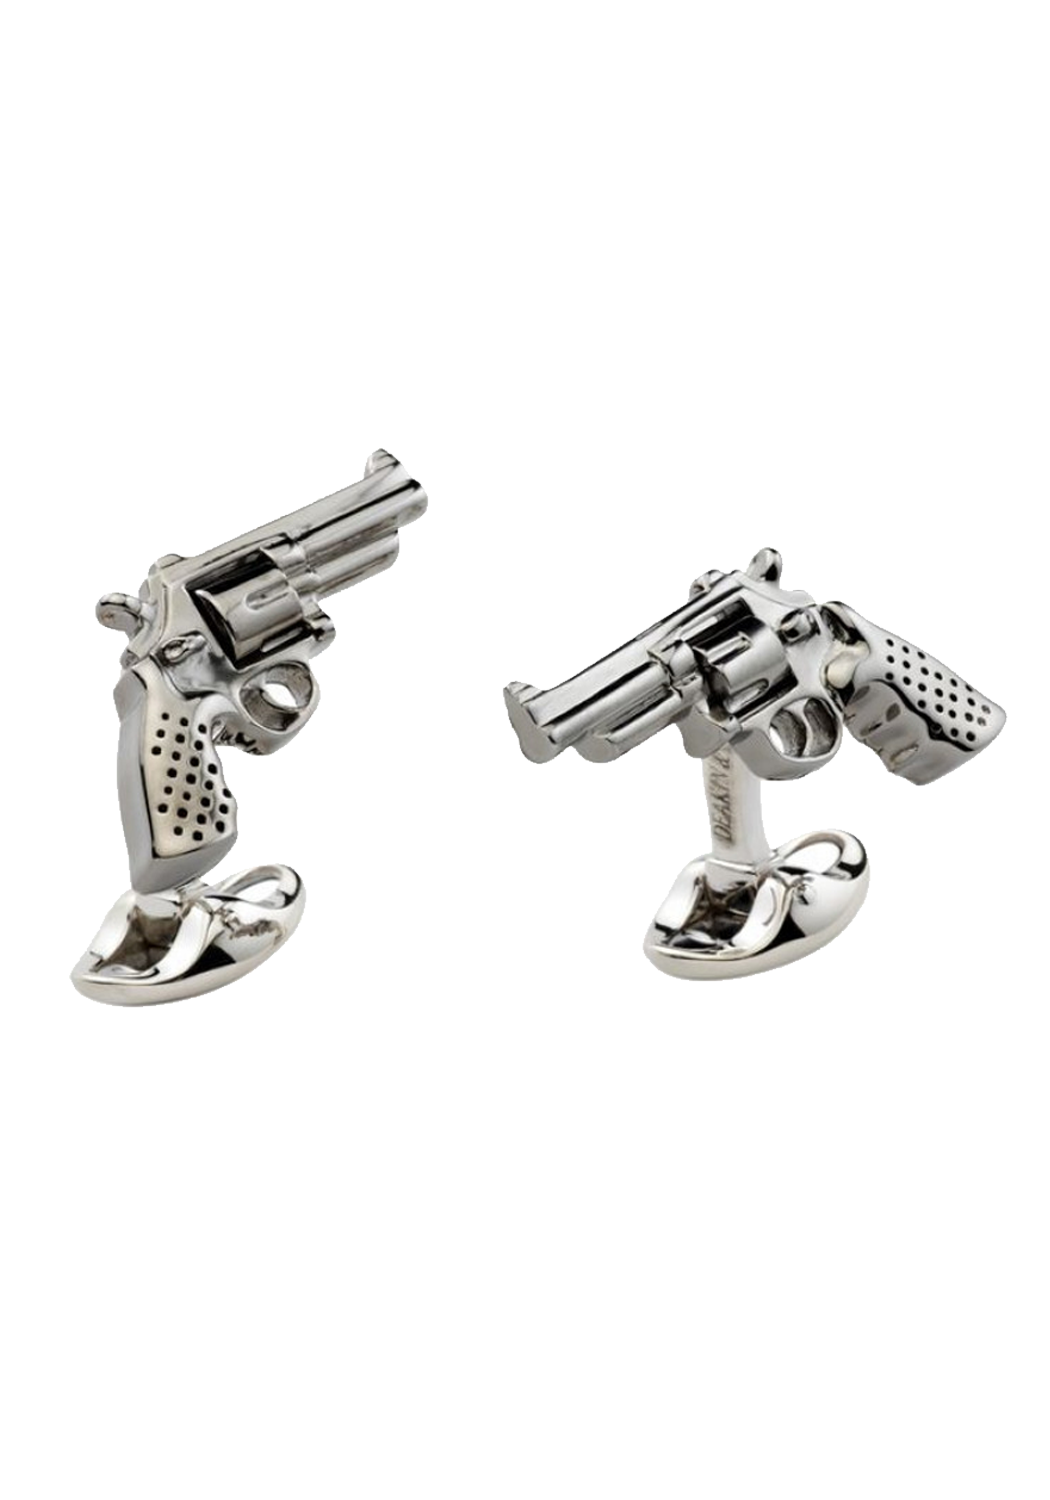 Deakin & Francis Sterling Silver Revolver Gun Cufflinks | OsterJewelers.com